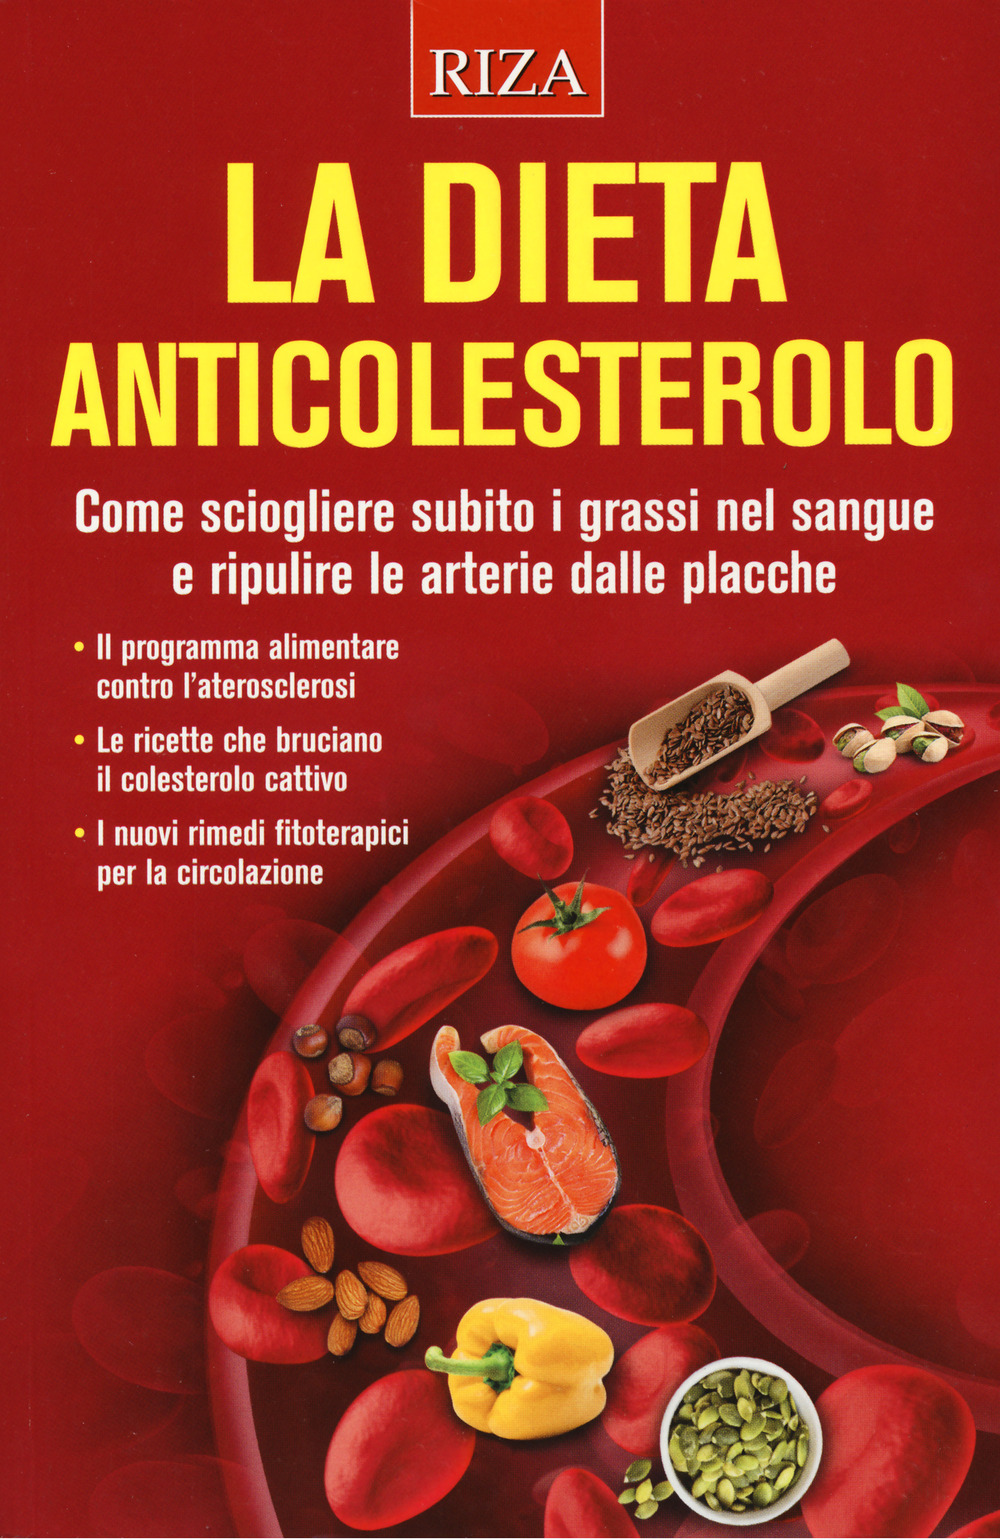 La dieta anticolesterolo. Come sciogliere subito i grassi nel sangue e ripulire le arterie dalle placche